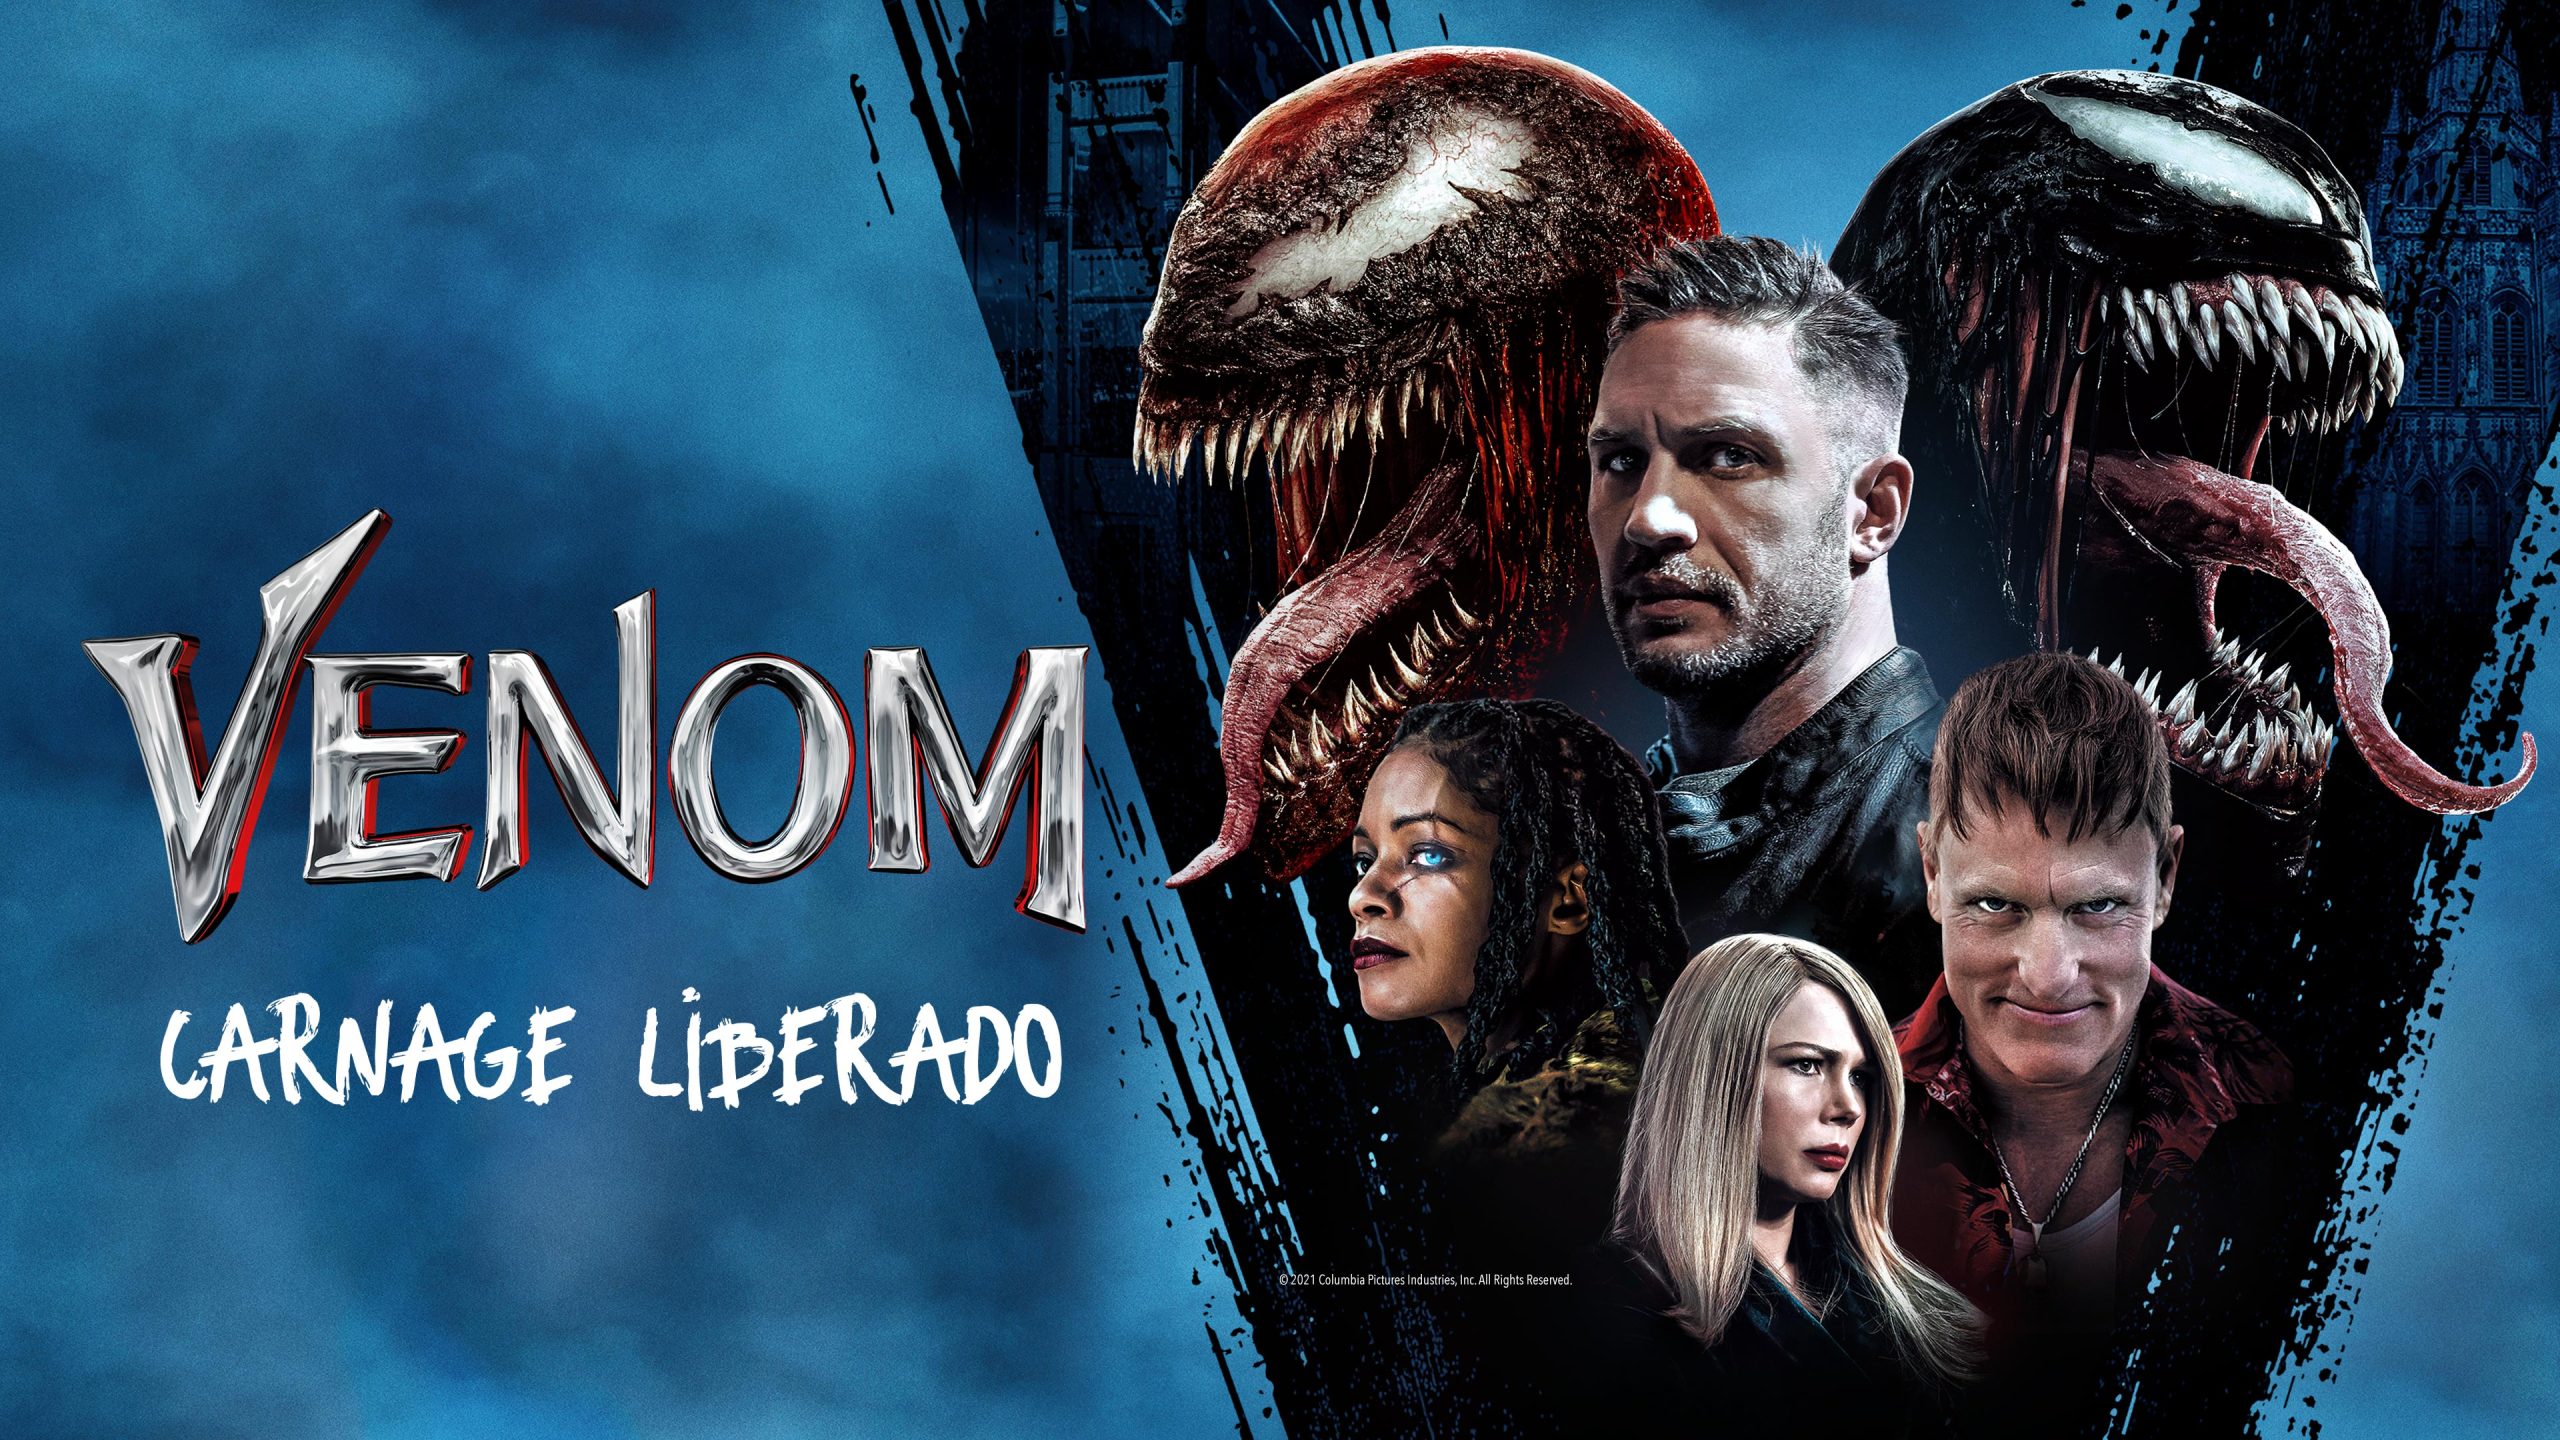 Foto de “Venom”, “Stillwater” y otras películas llegan a la Sección Alquiler de Claro video en enero